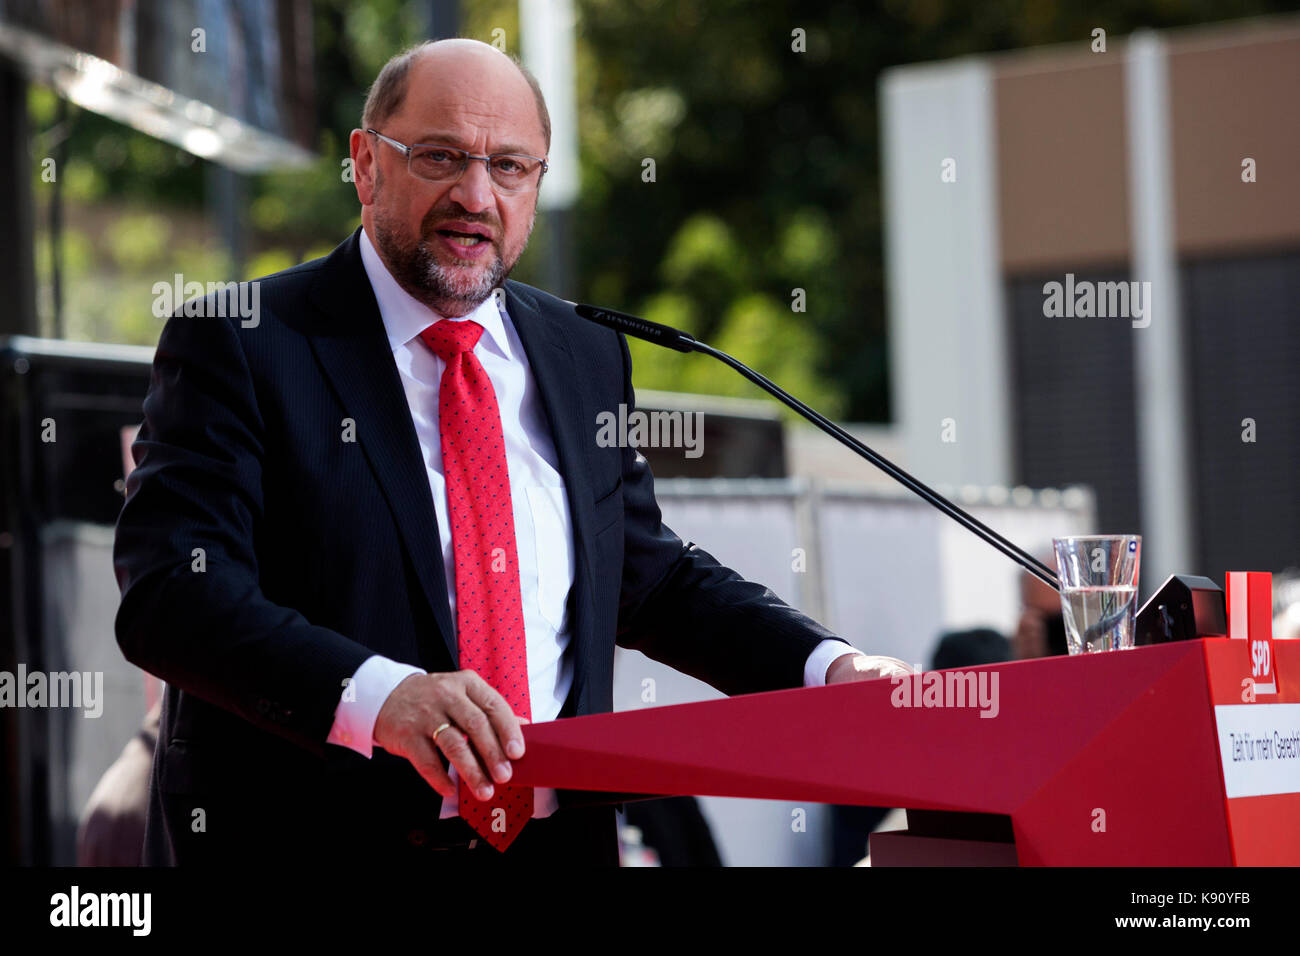 Gelsenkirchen (Germania). Il 20 settembre 2017. leader della SPD (socialdemocratici) e in corsa per diventare il prossimo chanceller della Germania nel Bundestag elezioni questa domenica, Martin Schulz assiste un rally a Gelsenkirchen, zona della Ruhr, Germania. Foto Stock